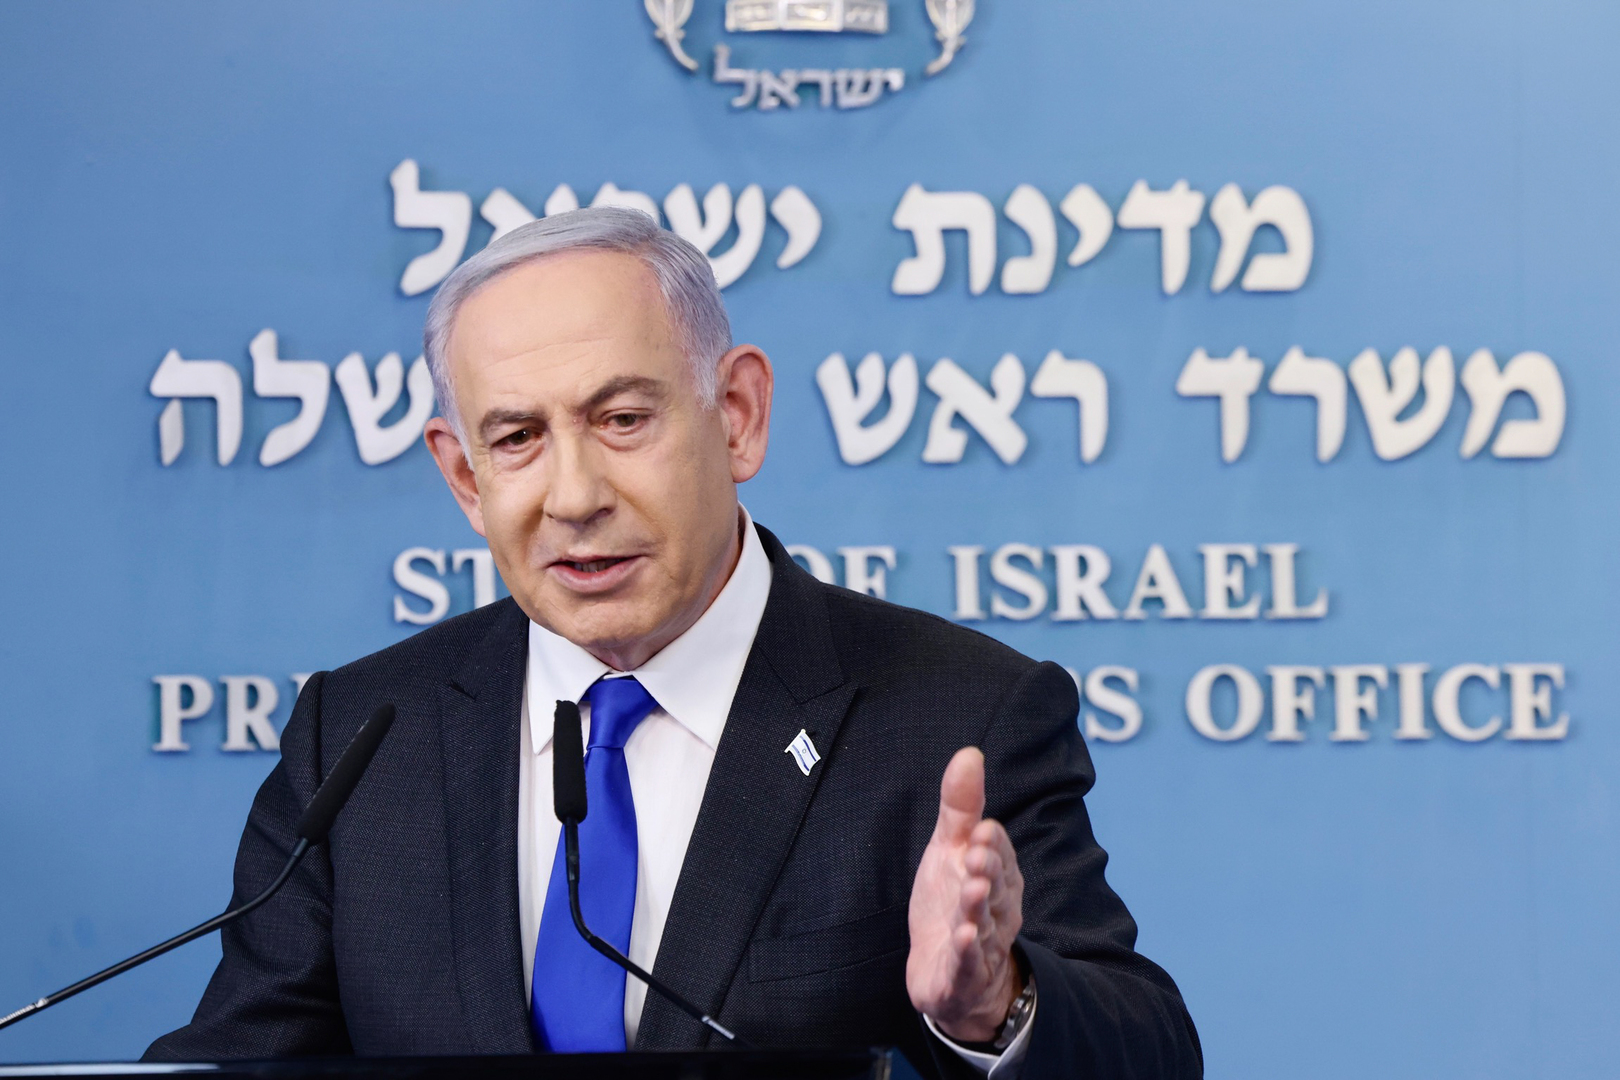 نتنياهو: إسرائيل ستحتفظ بالسيطرة الأمنية الكاملة على الضفة الغربية وقطاع غزة